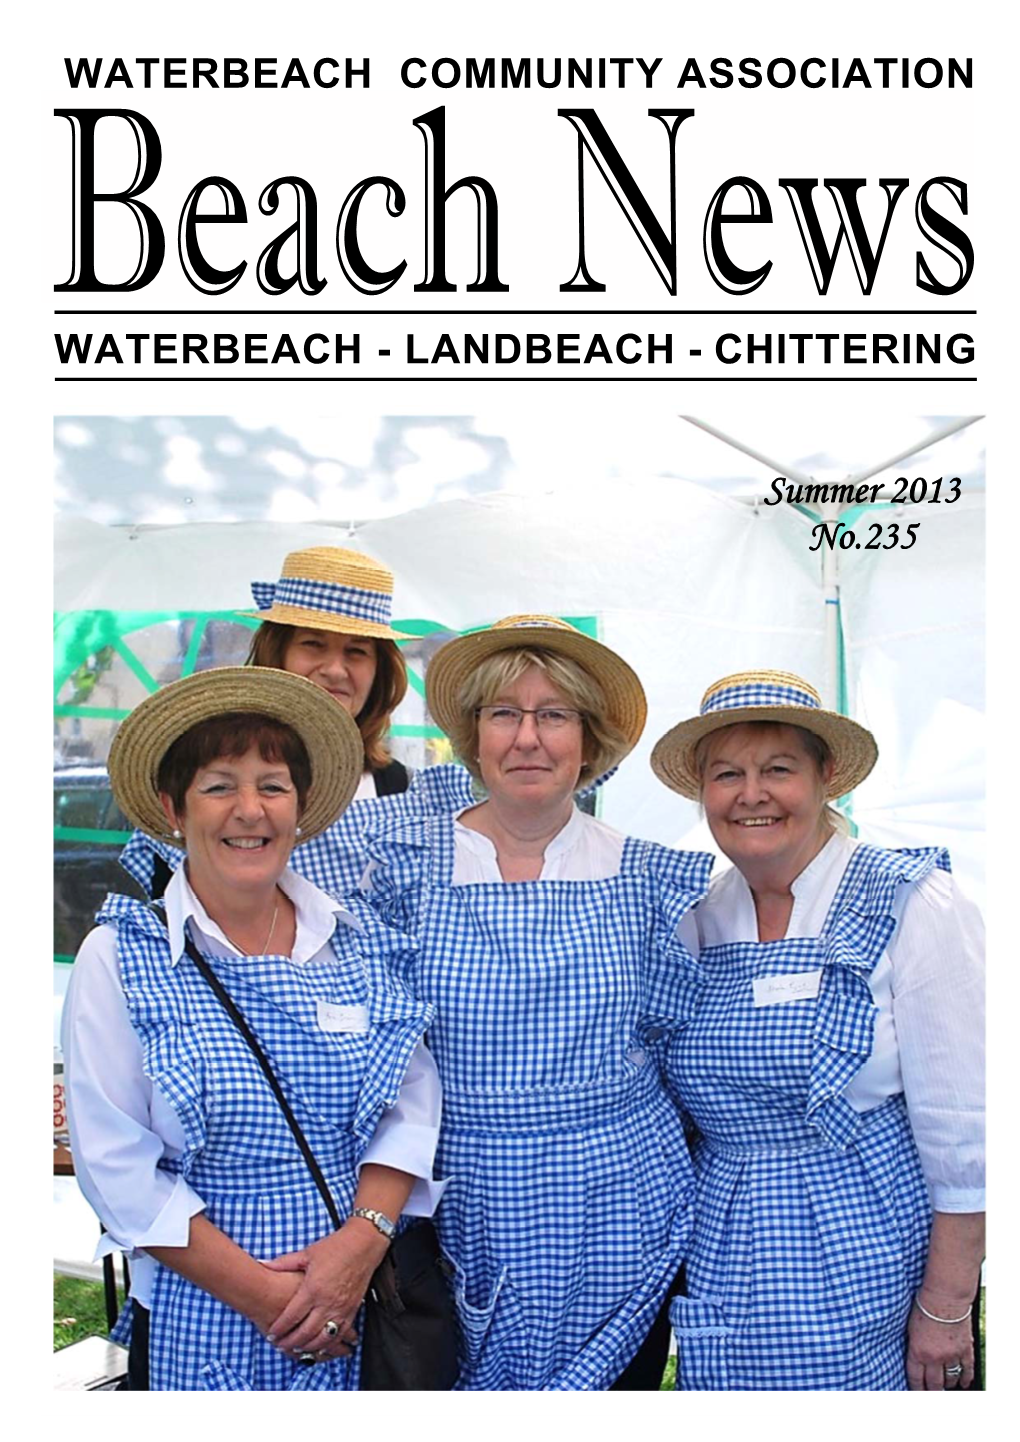 BEACH NEWS Journal of Waterbeach Community Association